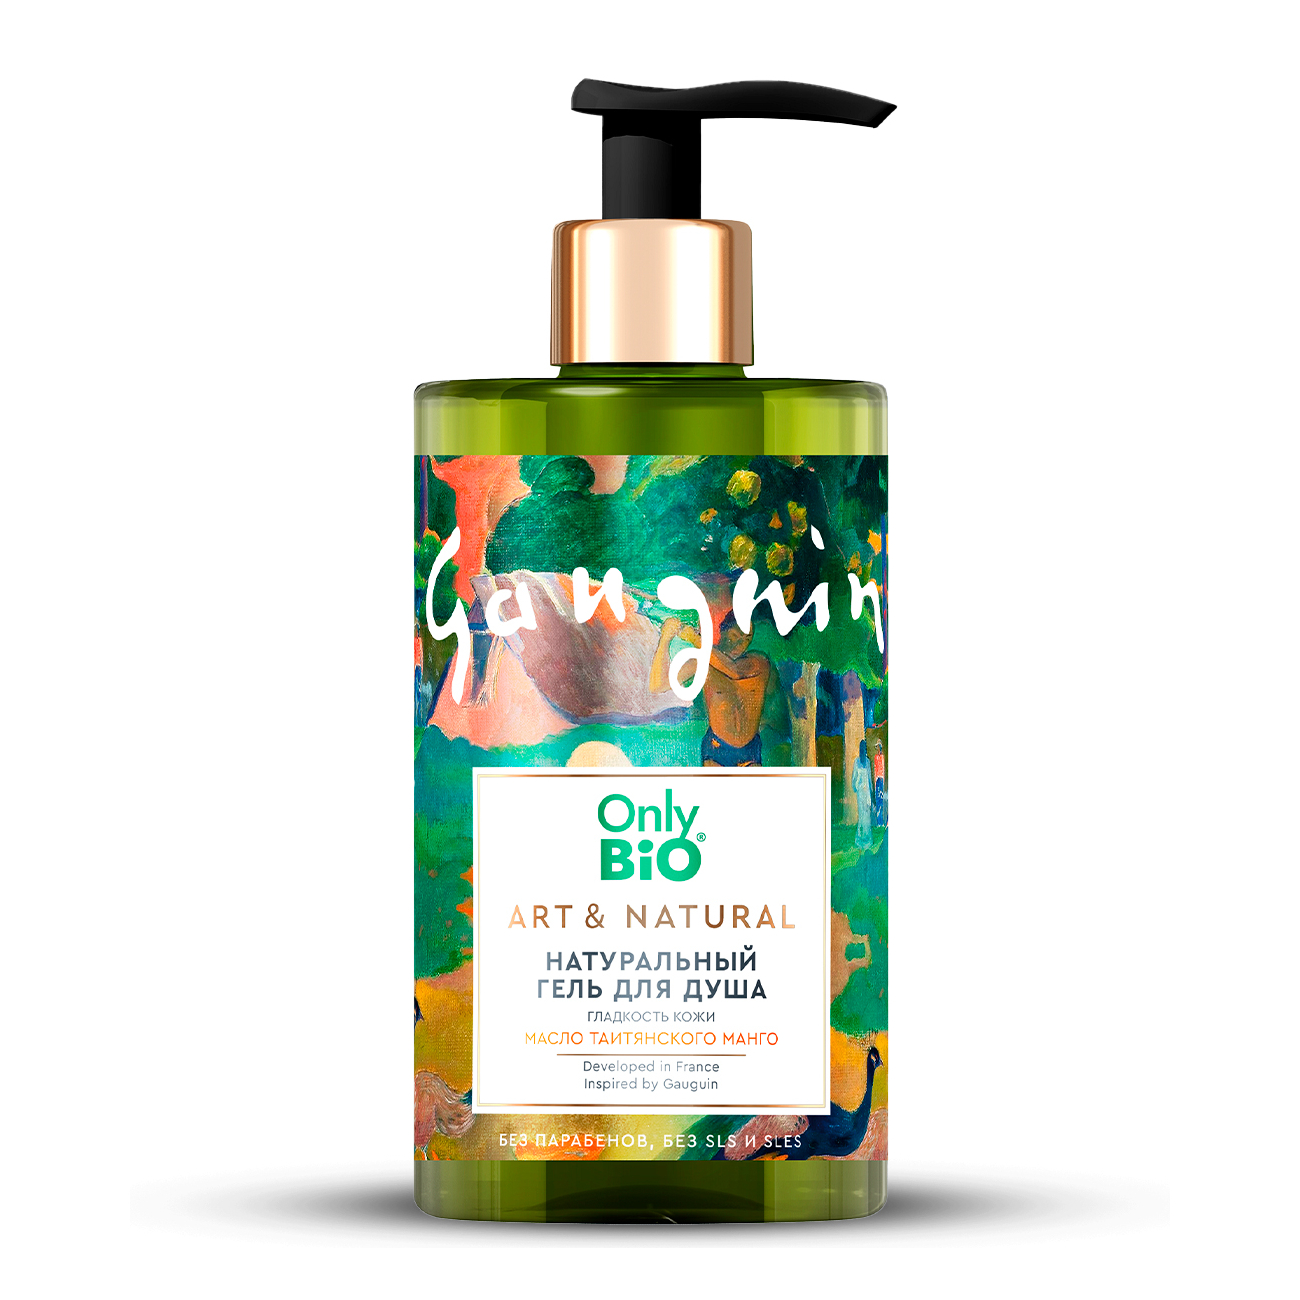 Гель для душа Only Bio Art & Natural Гладкость кожи масло таитянского манго 420 мл